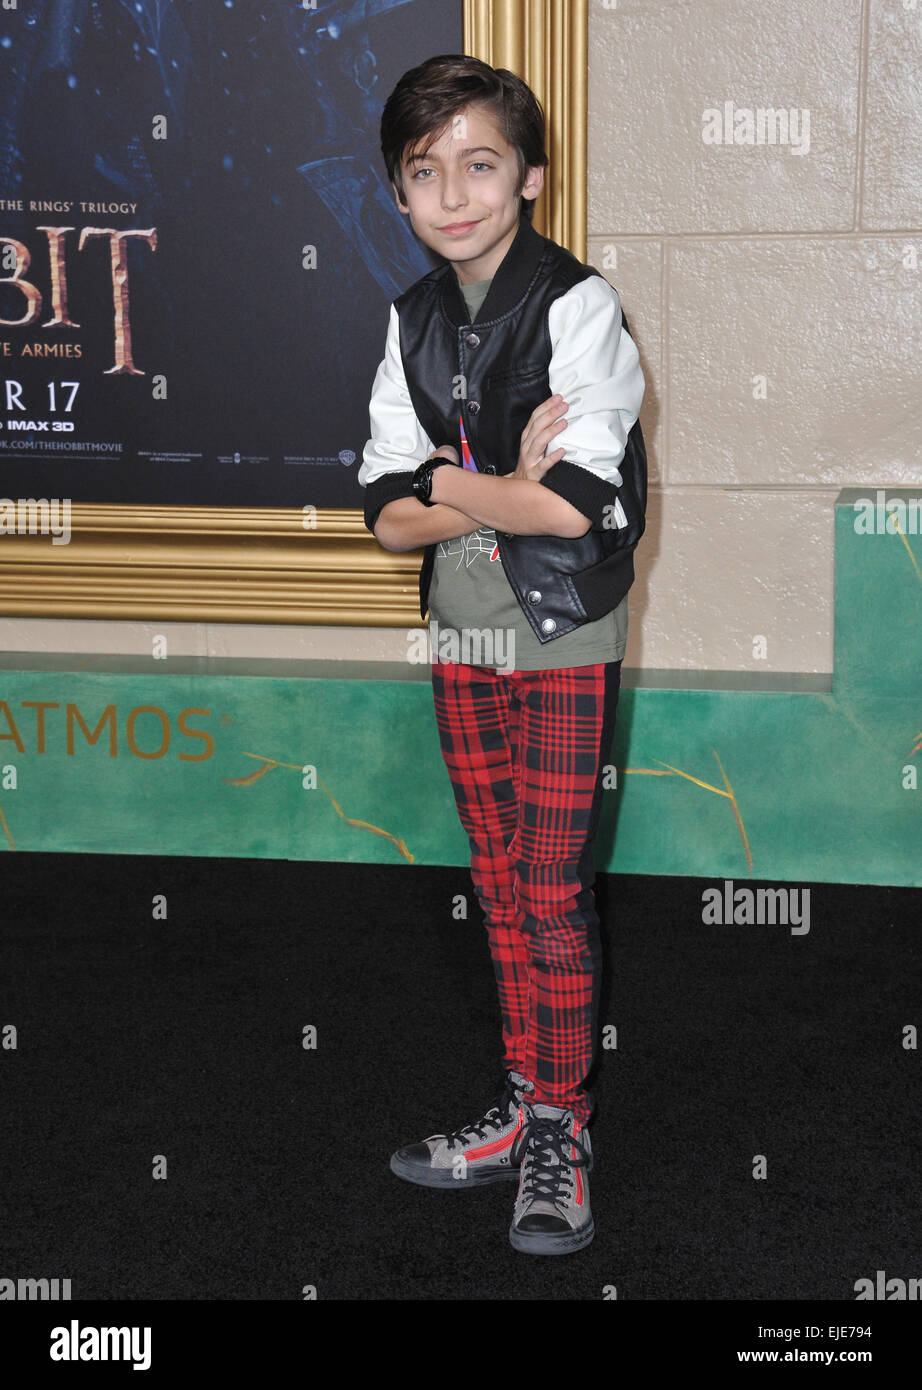 LOS ANGELES, CA - 9 dicembre 2014: Aidan Gallagher presso il Los Angeles premiere di 'The Hobbit: la Battaglia dei cinque eserciti" presso il Teatro di Dolby, Hollywood. Foto Stock